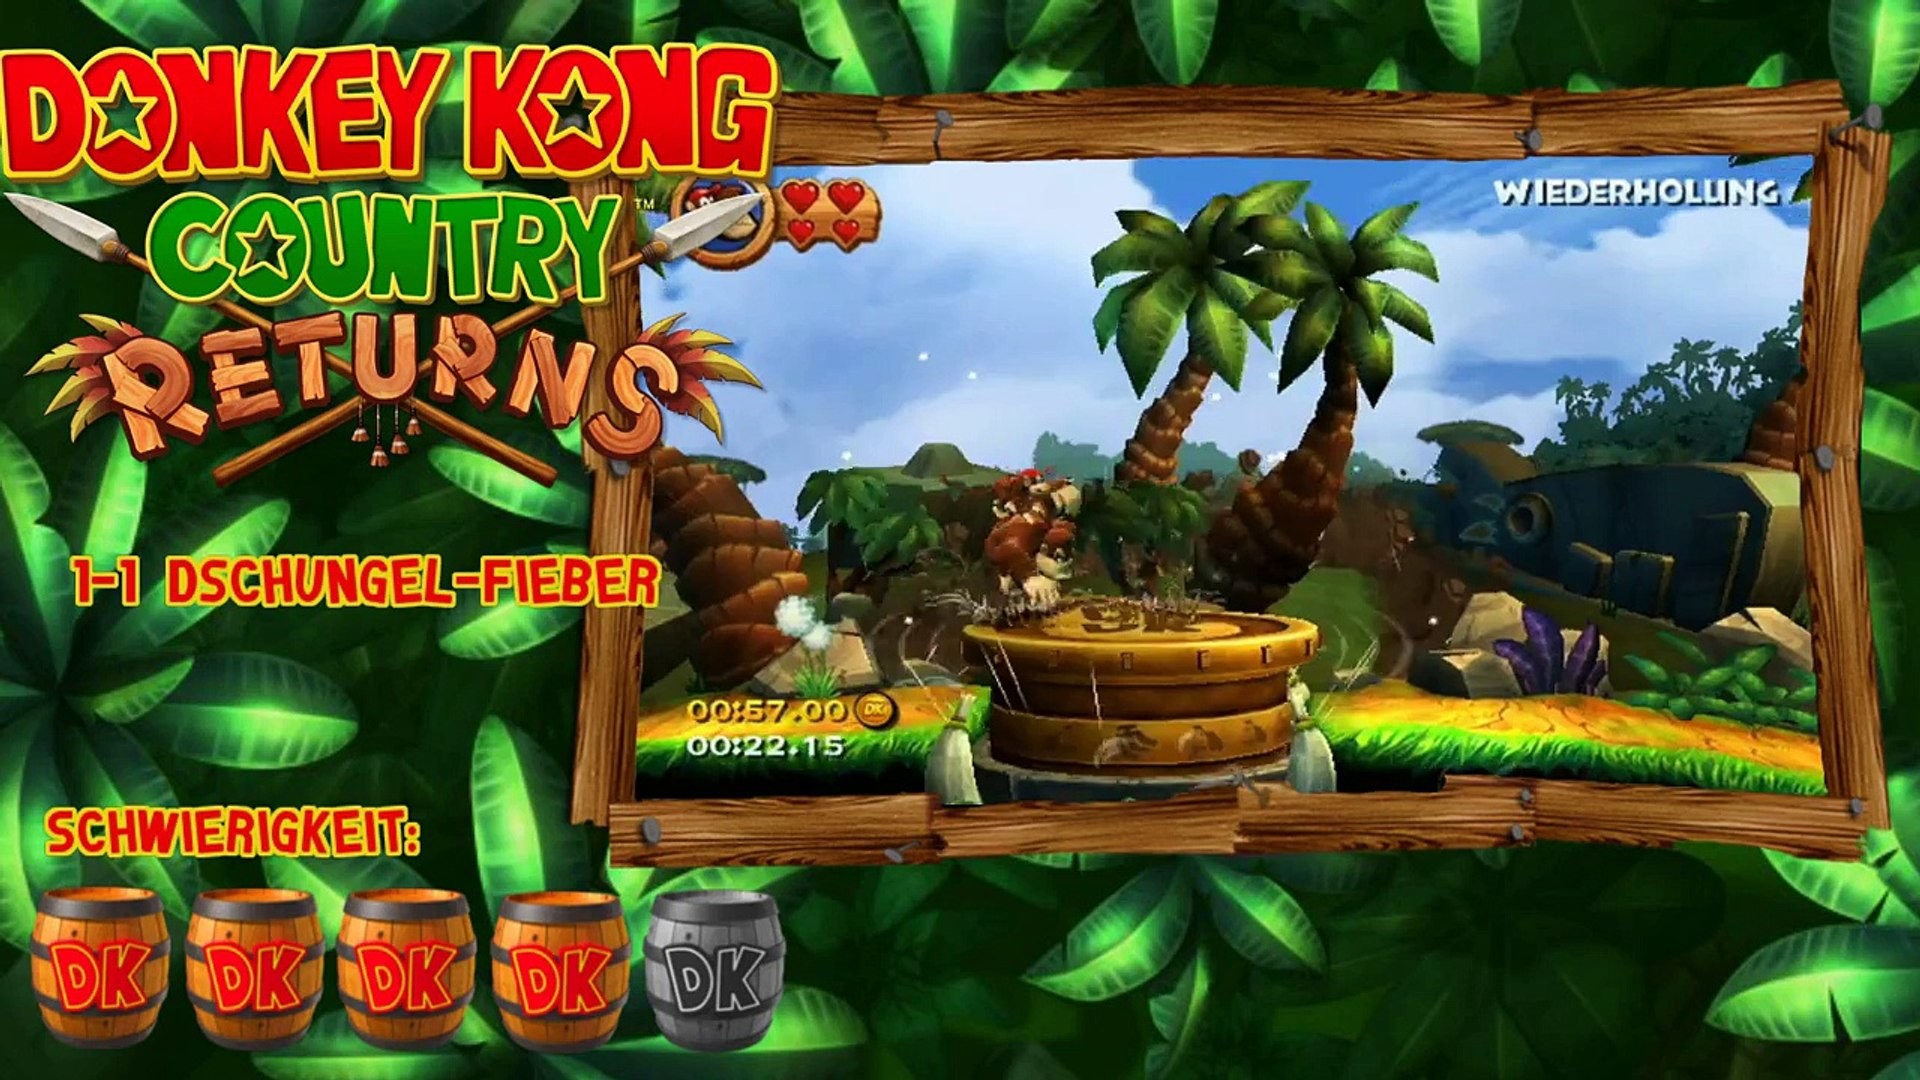 1920x1080 Donkey Kong Country Returns | Spiel auf Zeit | 1-1 Dschungel-Fieber |  00:52:67 - Dailymotion Video